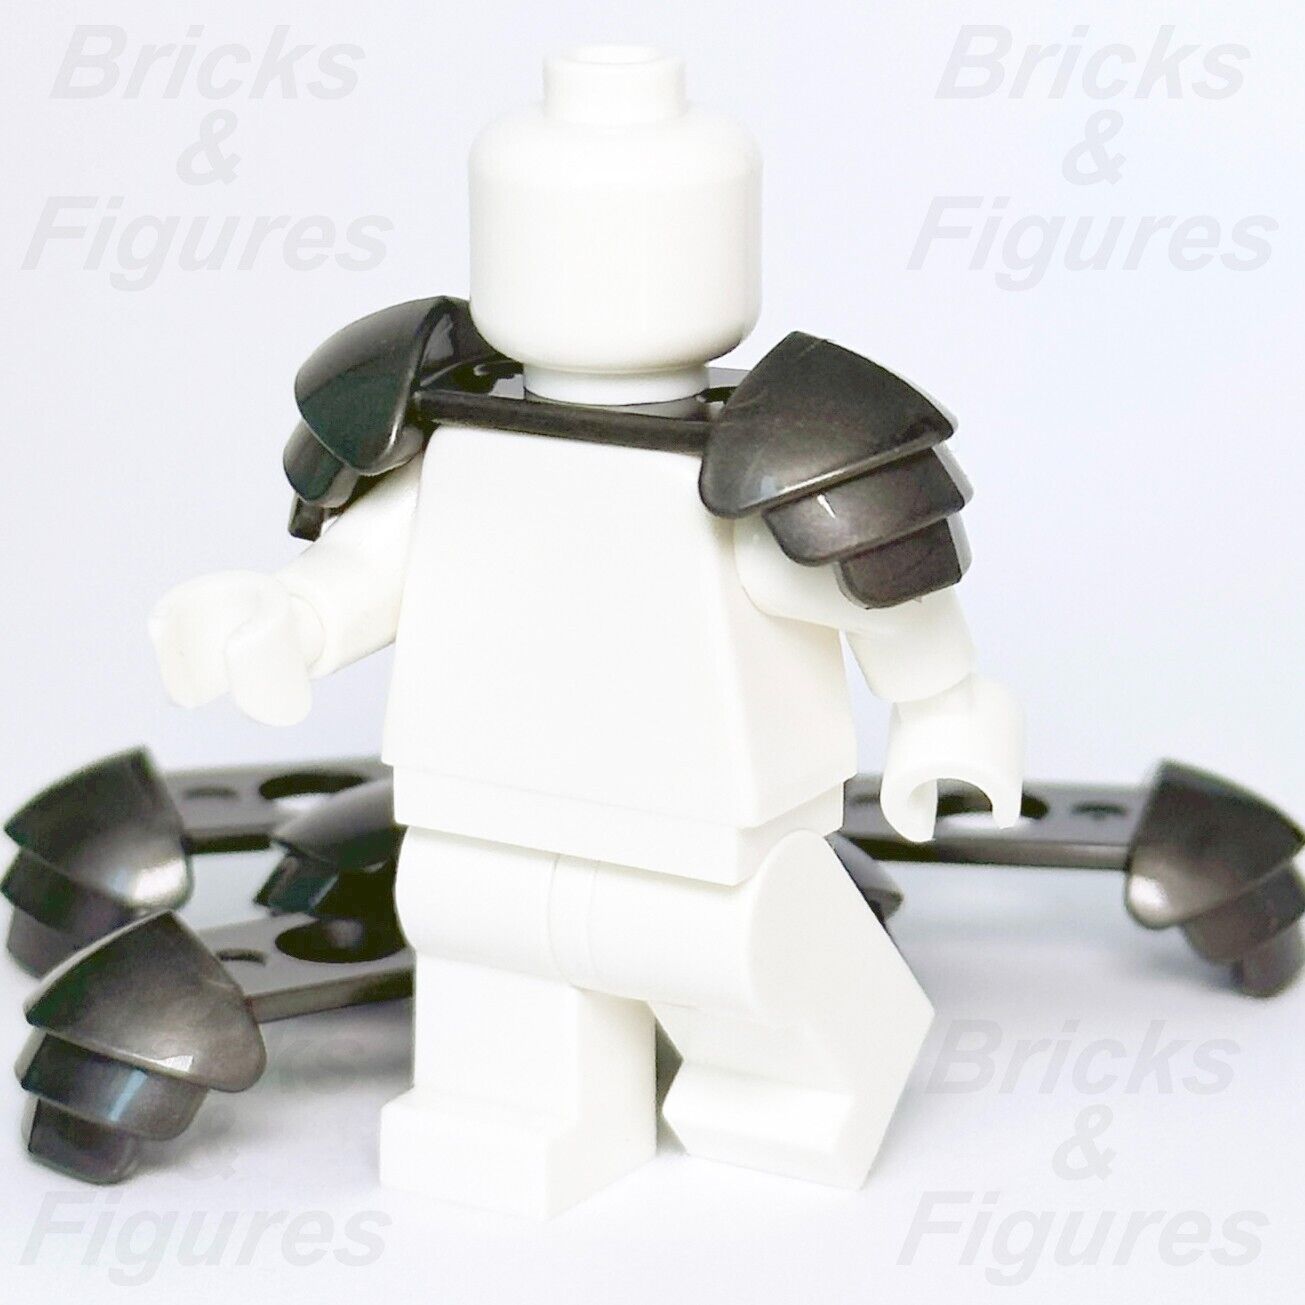 Castle LEGO 5 x Shoulder Armour Knight Soldier Armor Minifigure Part 37614 New - Bricks & Figures